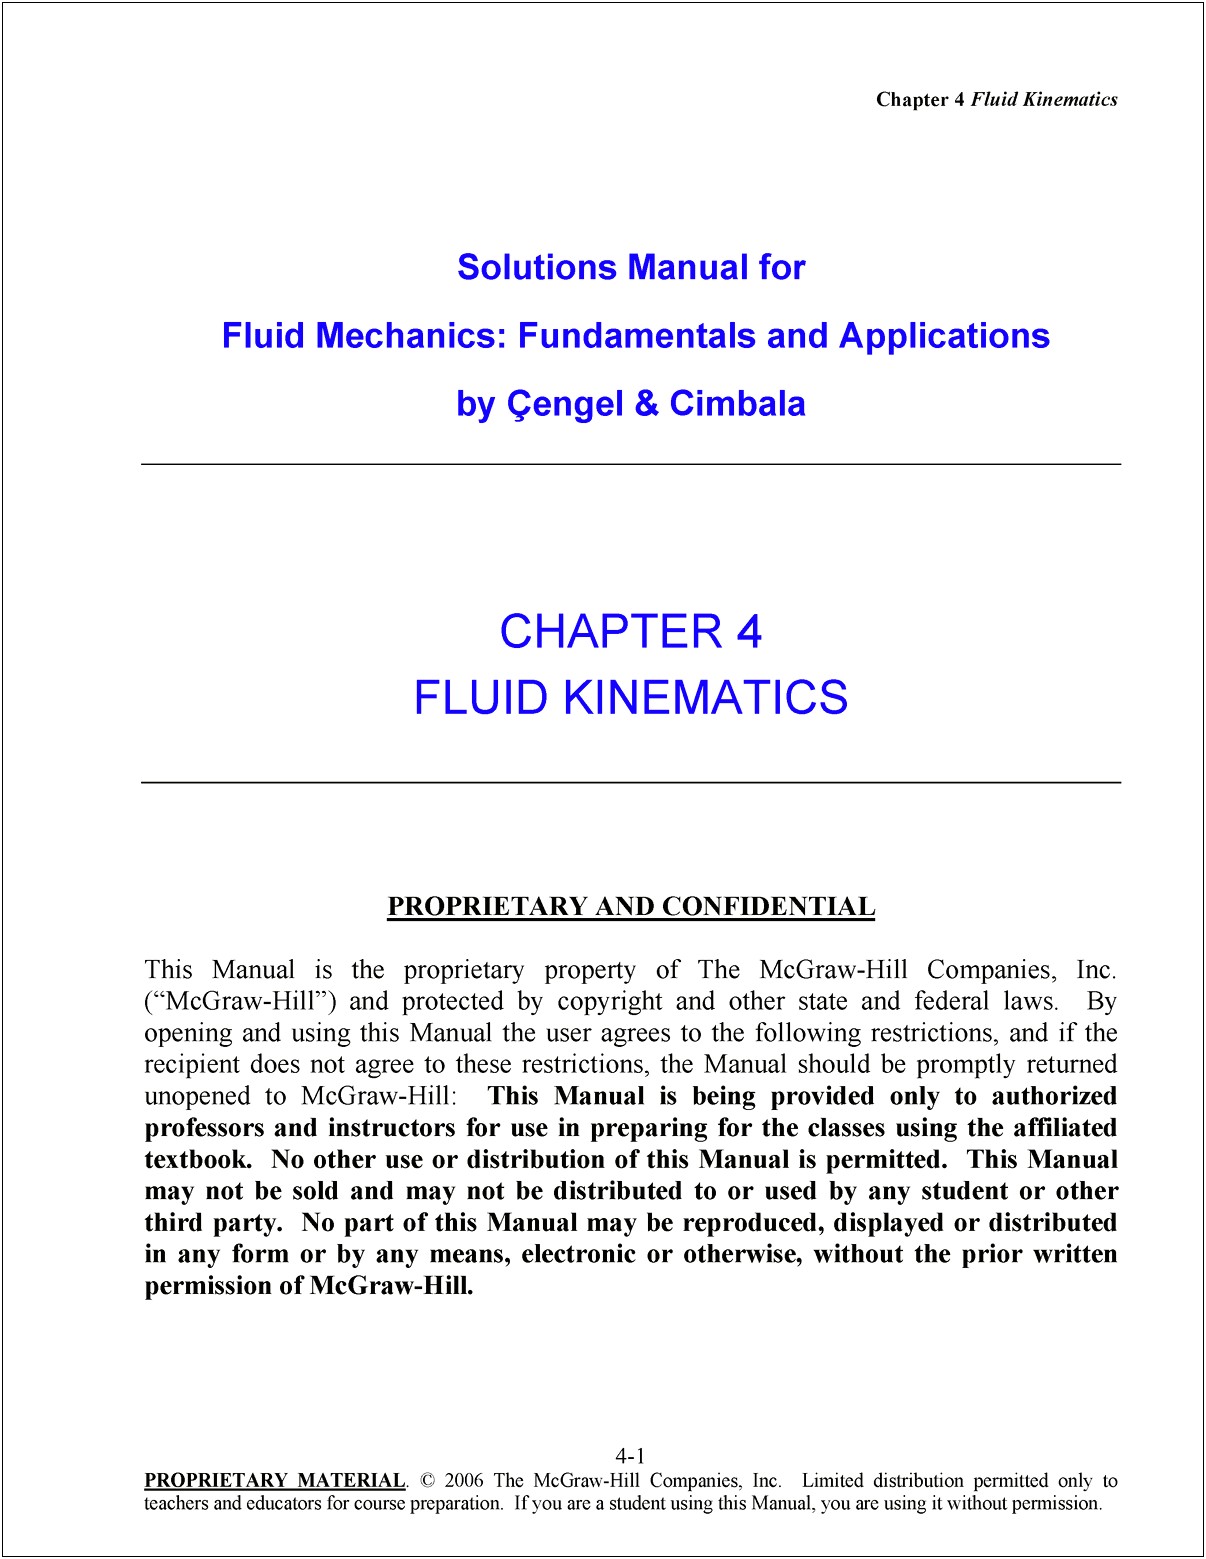 Fluid Mechanics Course Description For Resume